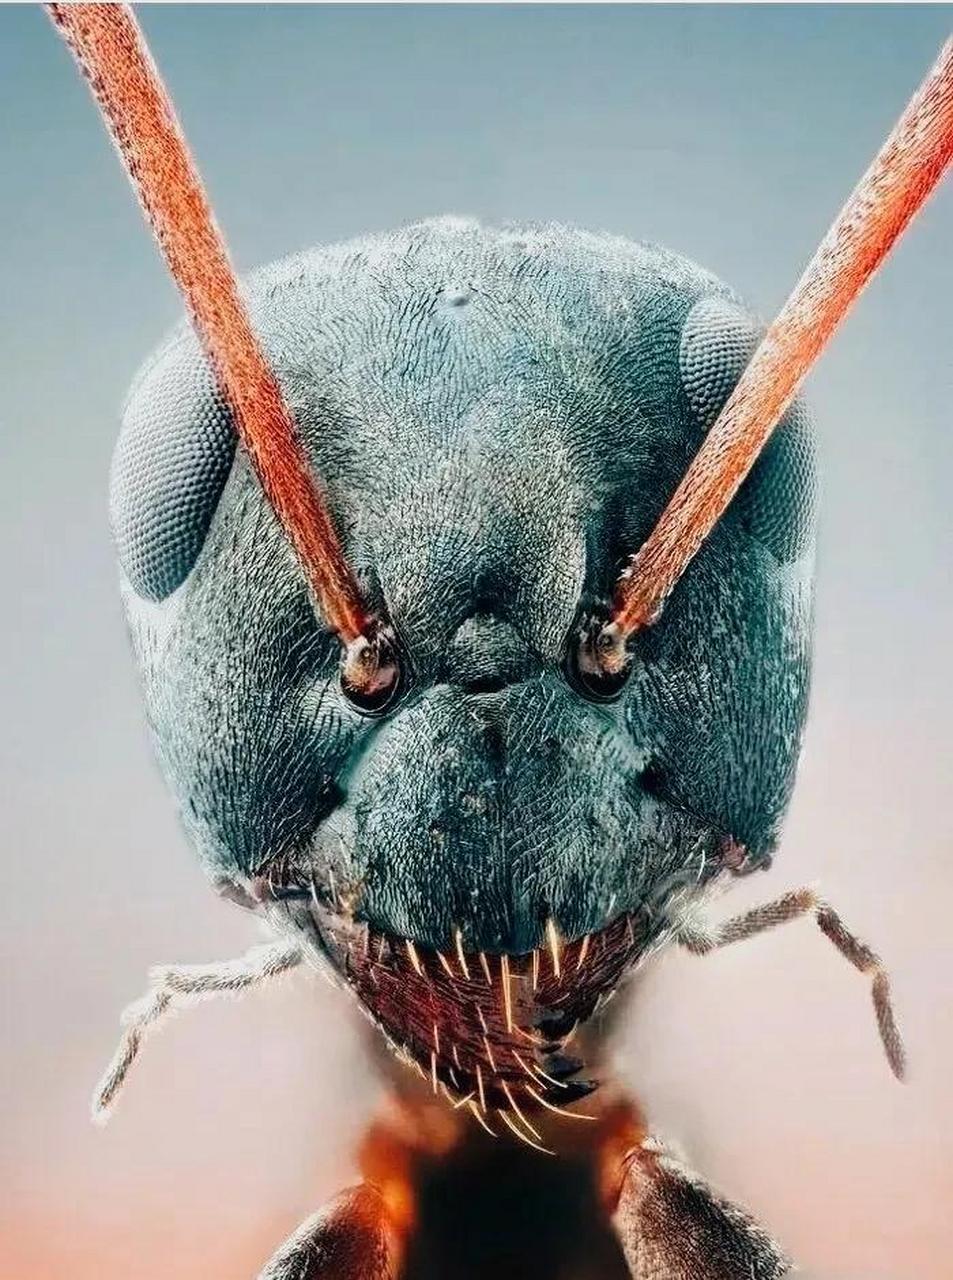 这是一只显微镜下的蚂蚁,看起来非常凶悍,与"可爱"两字一点儿也不沾边